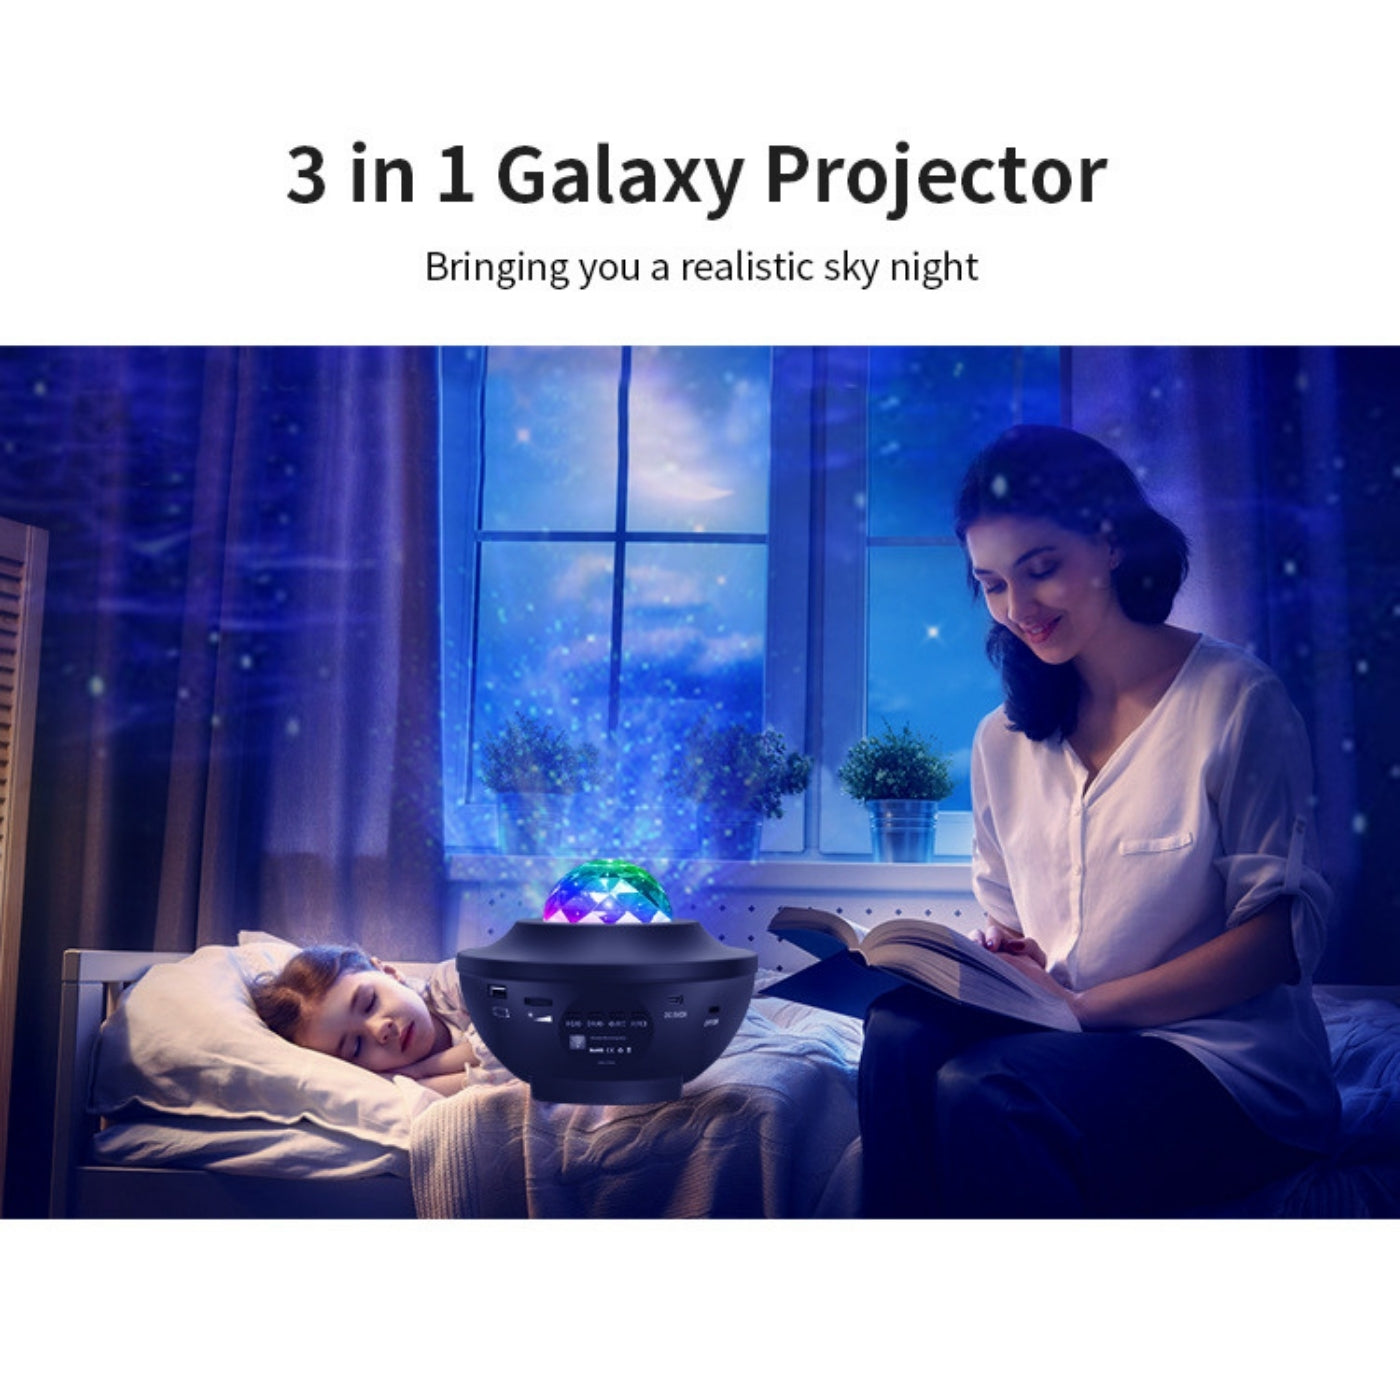 Projecteur de nuit étoilée Galaxy 3 en 1 avec deux haut-parleurs